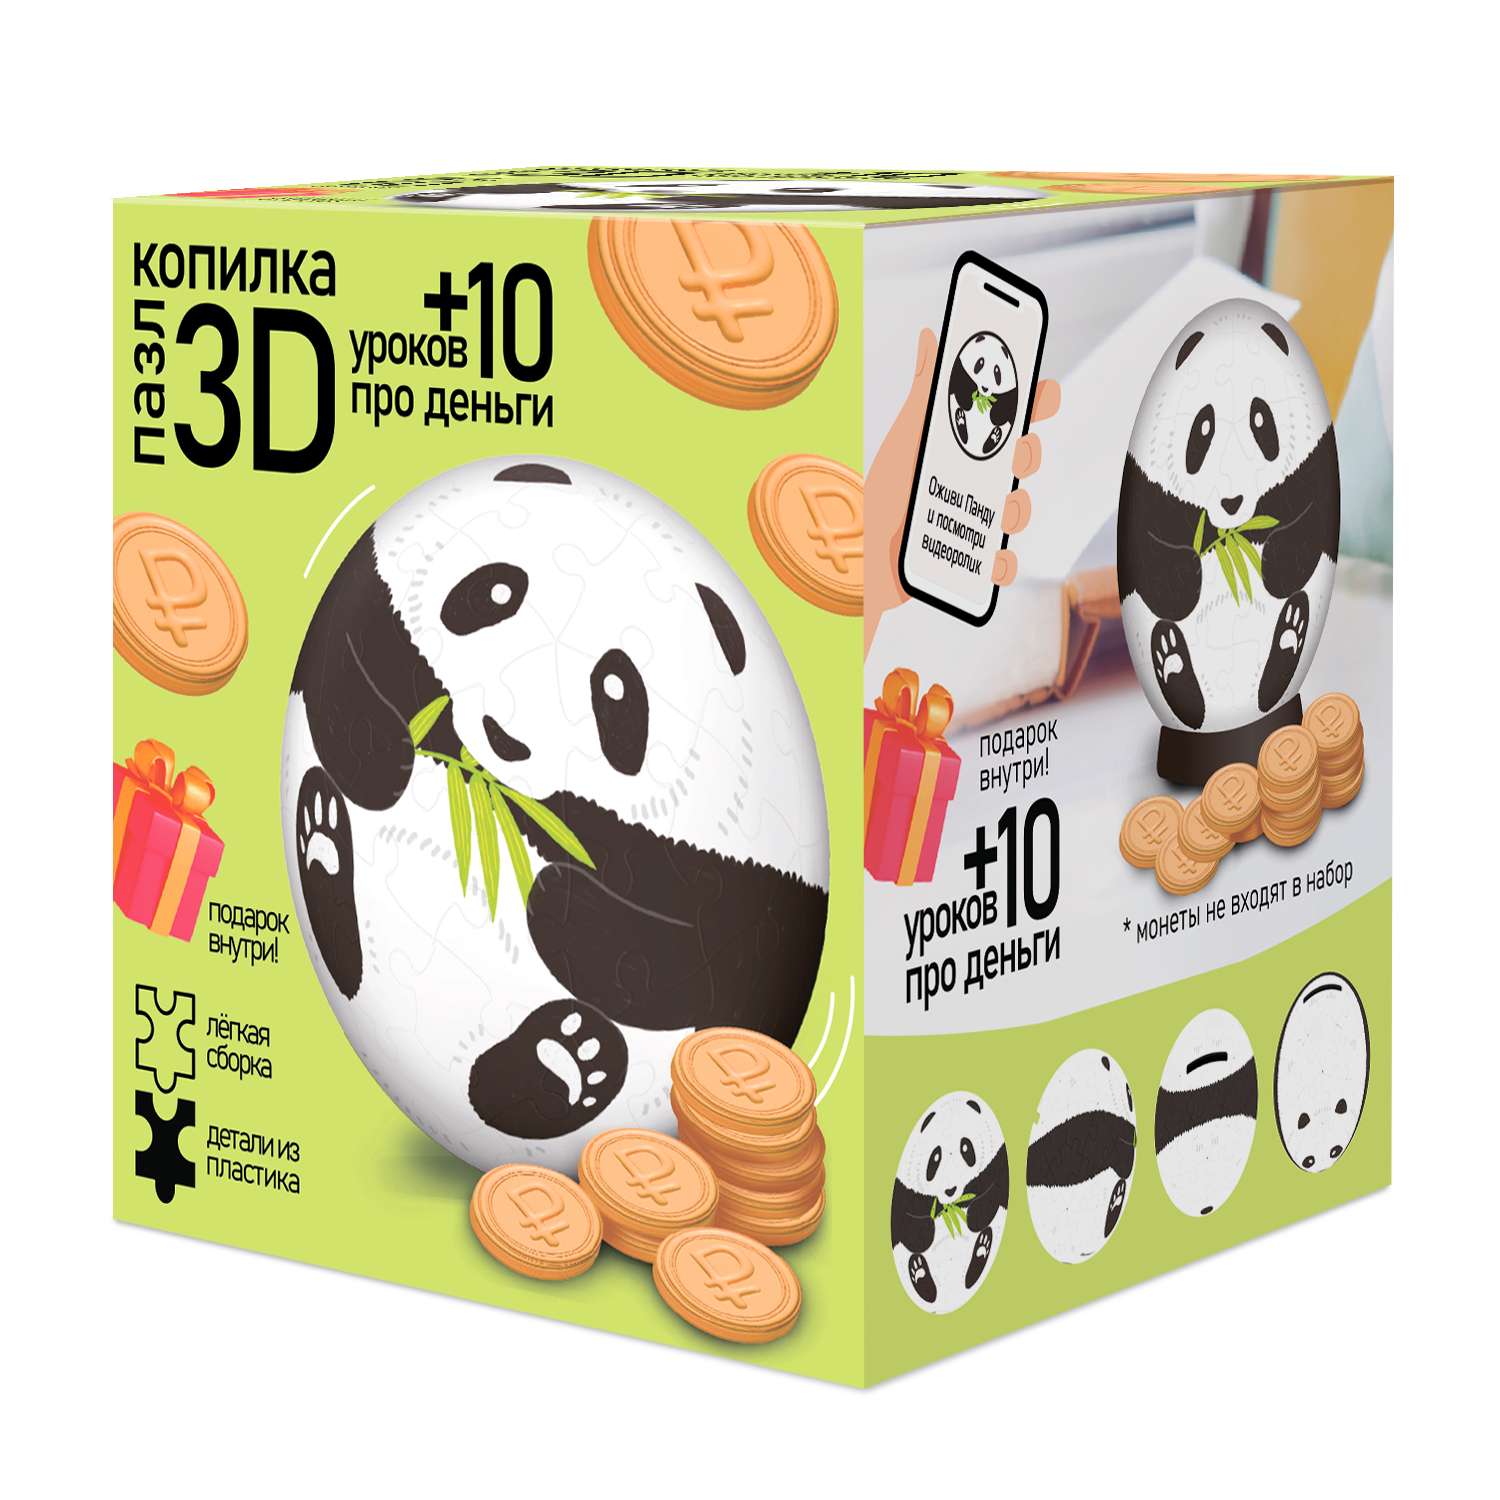 3D пазл-копилка ГЕОДОМ + 10 уроков про деньги. Панда. 60 деталей - фото 1